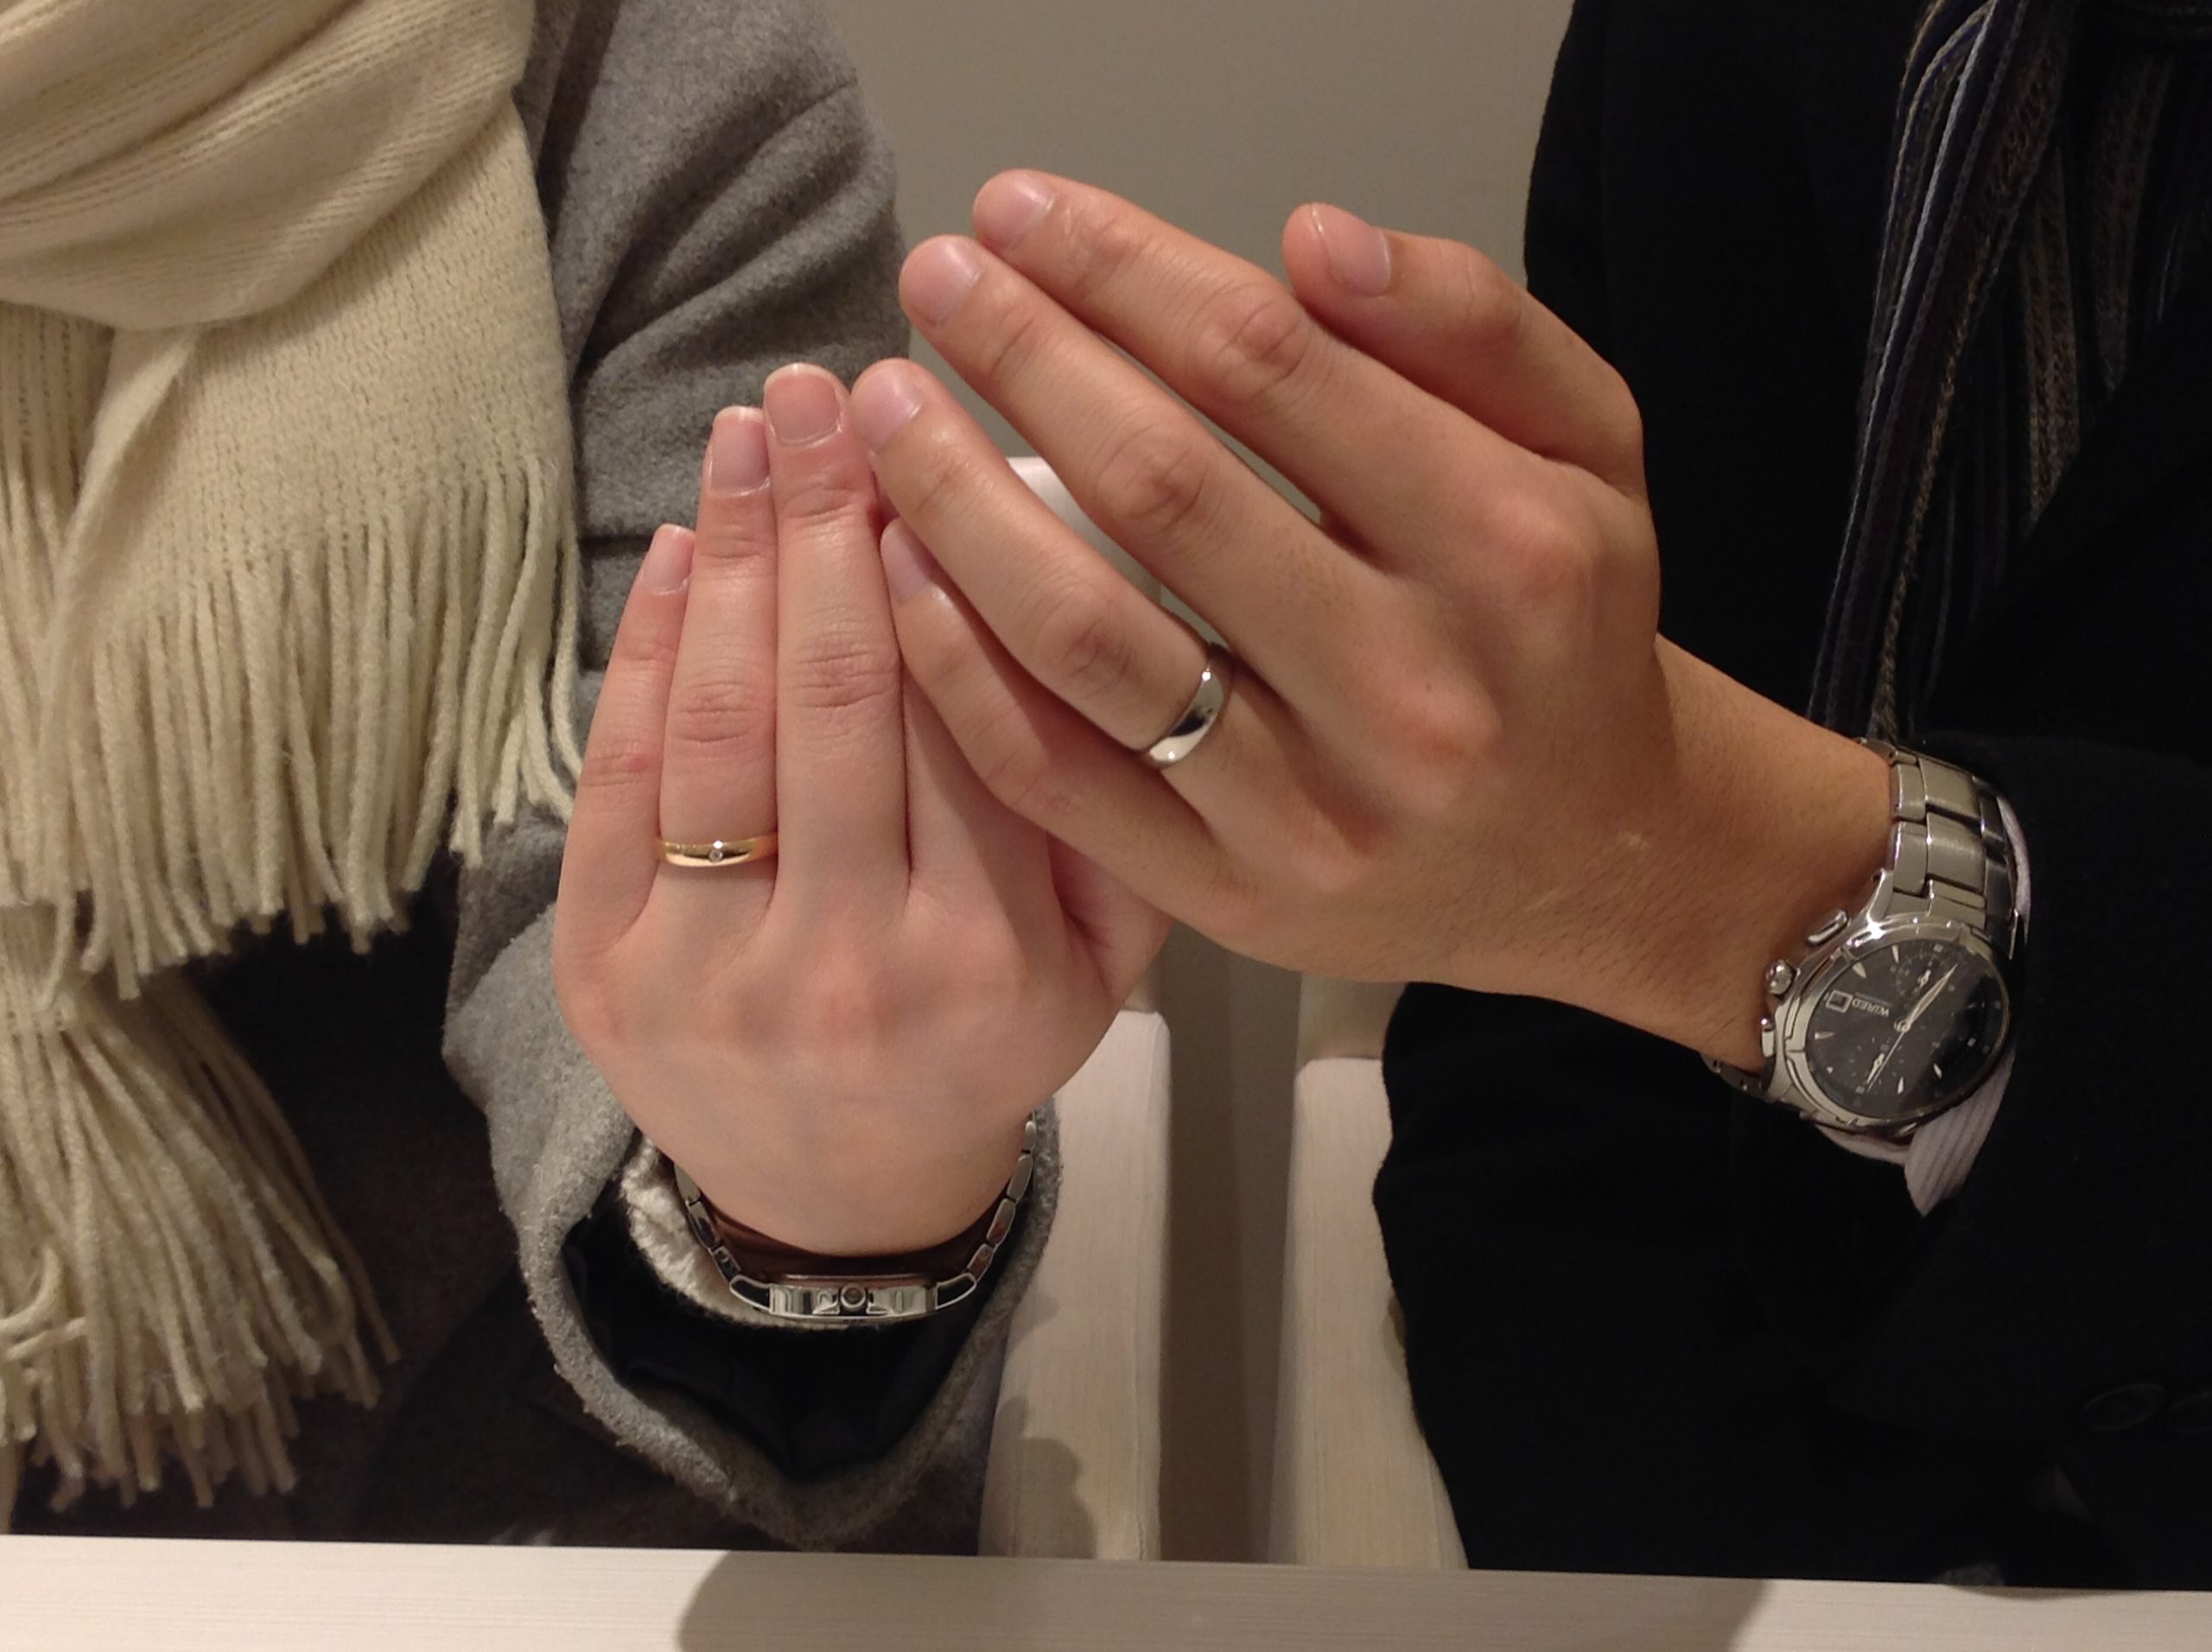 スイスの名門ブランド マイスター の結婚指輪をホワイトゴールドとローズゴールドでオーダーのｈ様ご夫妻 仙台店 公式 仙台 結婚 婚約指輪ウェディwedy ブライダル専門店